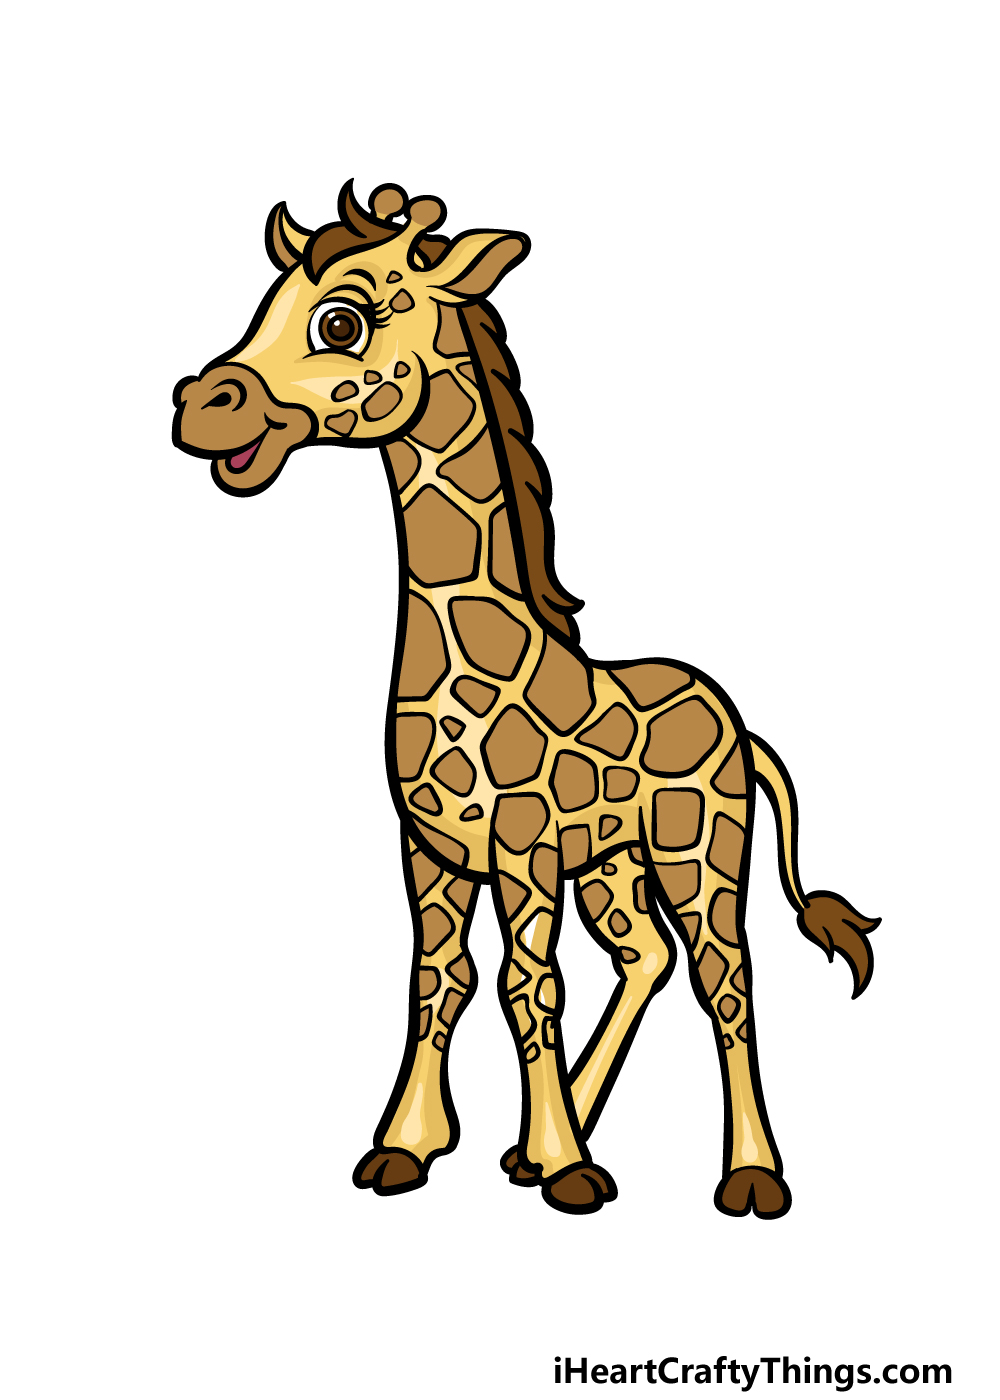 Giraffe Face Drawing | Giraffe art, Animal drawings, Pencil drawings of  animals